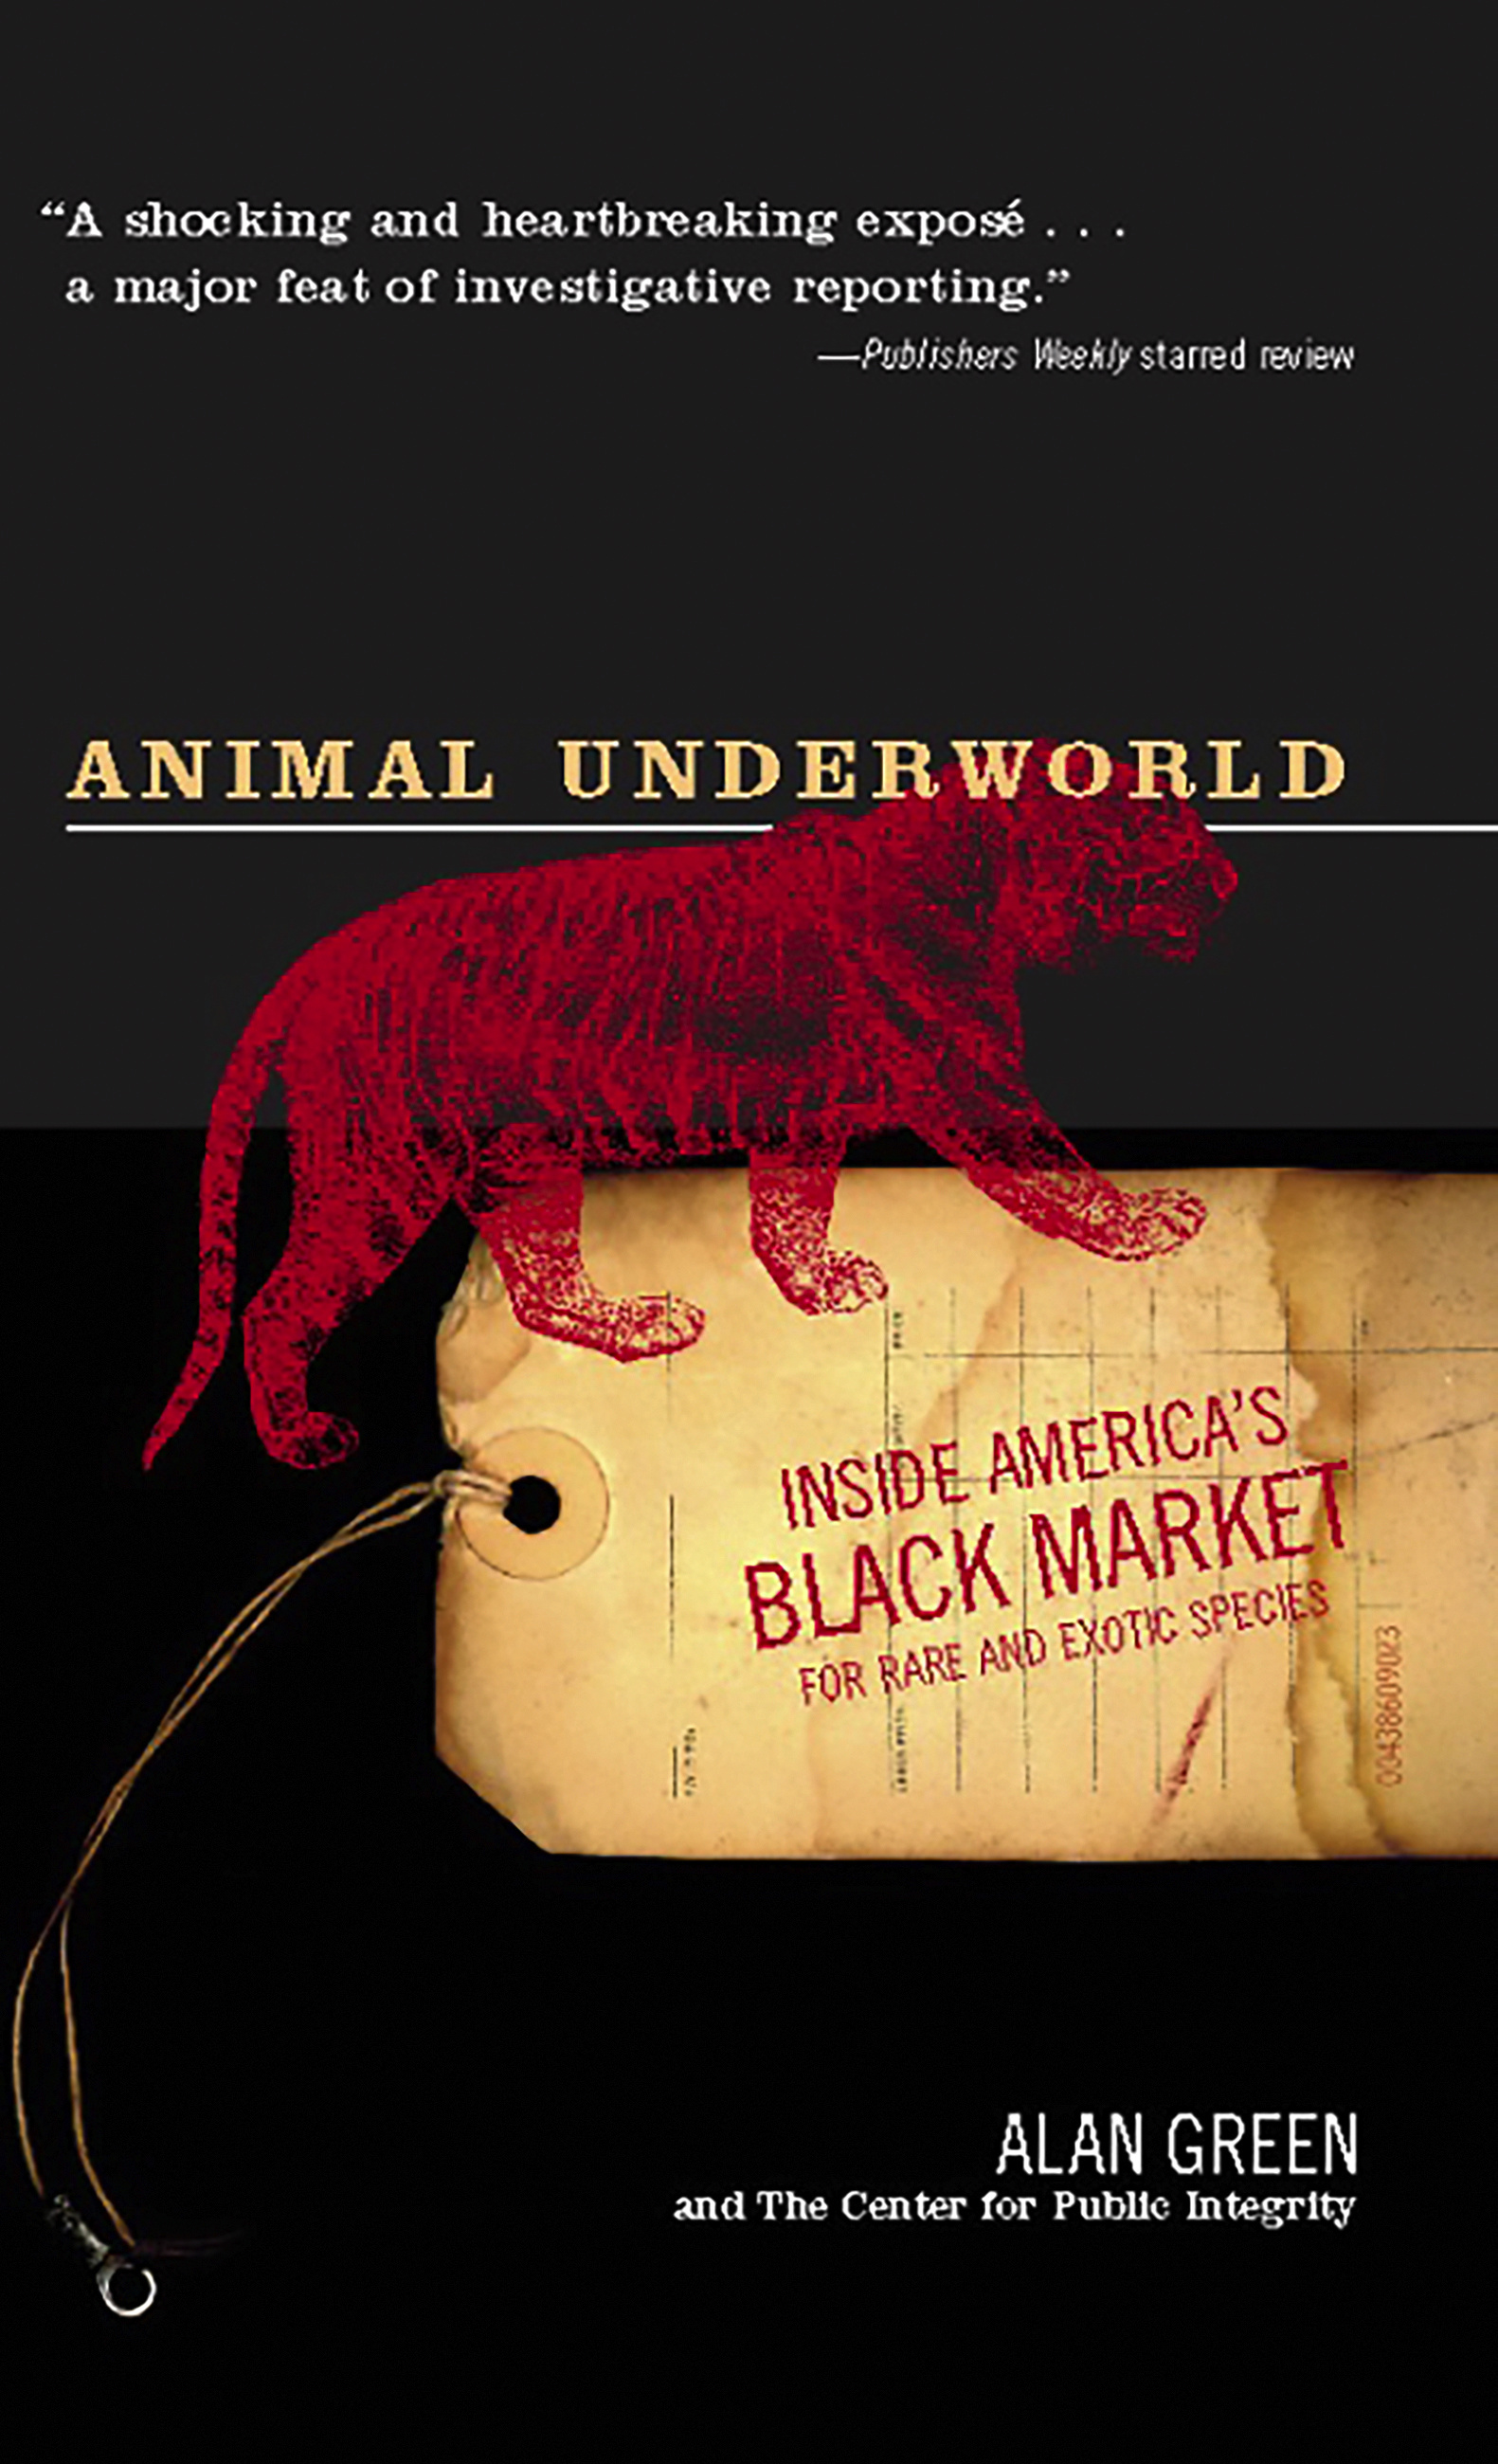 Animal Underworld by Alan Green | PublicAffairs